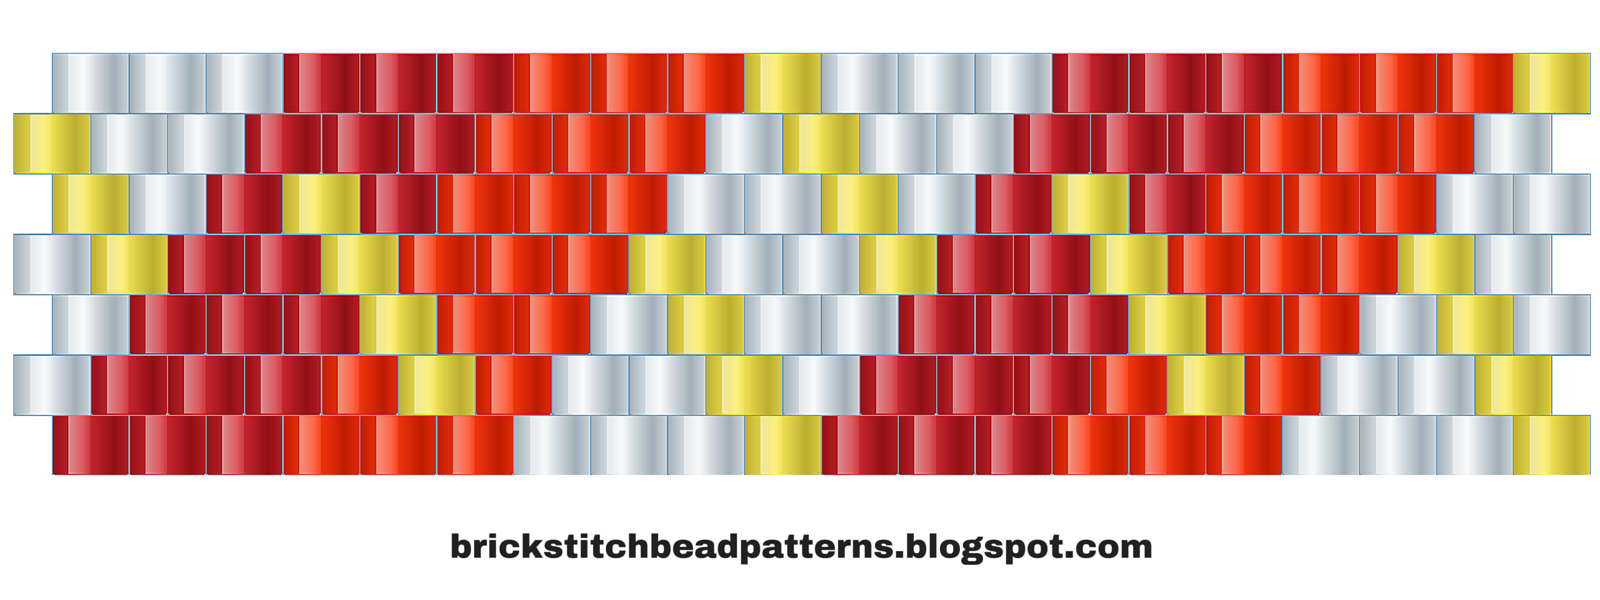 Brick Stitch Bead Patterns Journal: #10 Free Brick Stitch Pony Bead - Pony Bead Patterns Free Printable